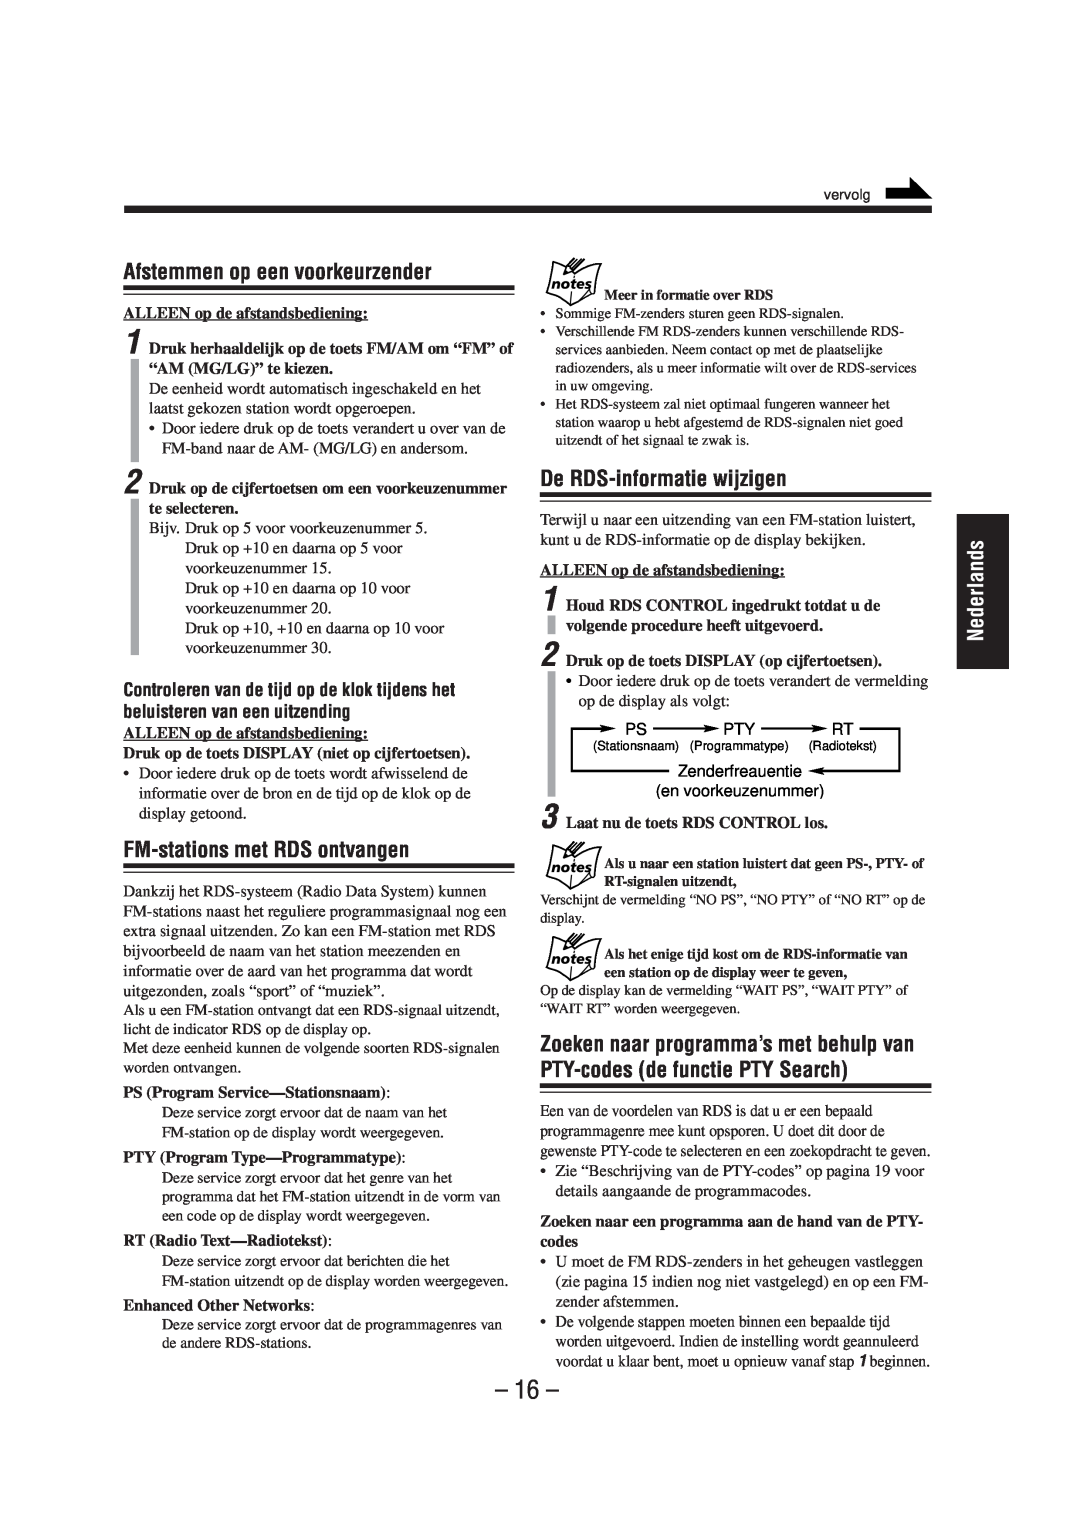 JVC UX-A52R manual Afstemmen op een voorkeurzender, De RDS-informatiewijzigen, FM-stationsmet RDS ontvangen, Nederlands 